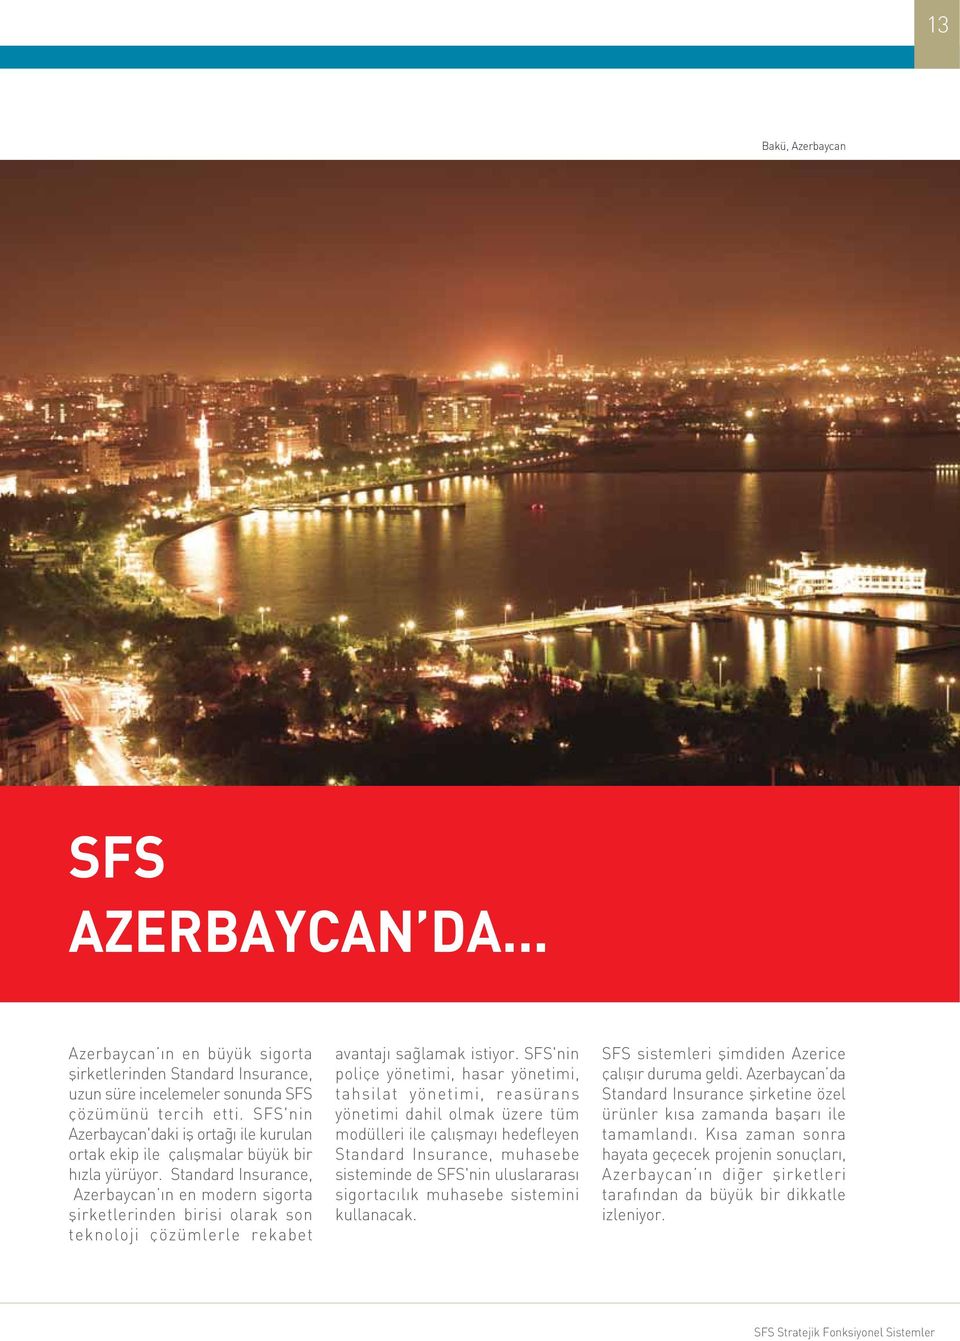 Standard Insurance, Azerbaycan ýn en modern sigorta þirketlerinden birisi olarak son teknoloji çözümlerle rekabet avantajý saðlamak istiyor.